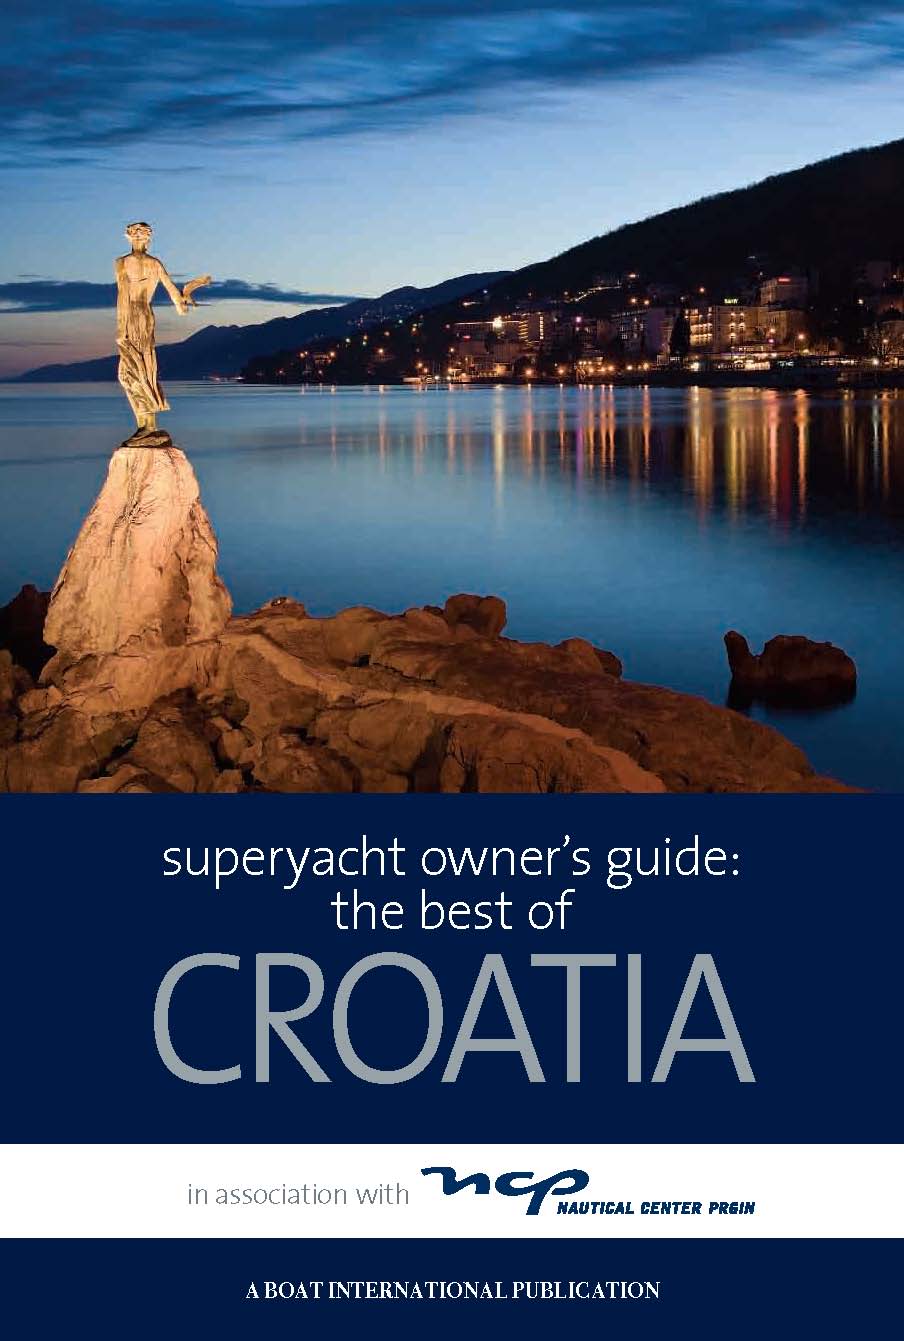 [Croatia+Guide+Cover.jpg]